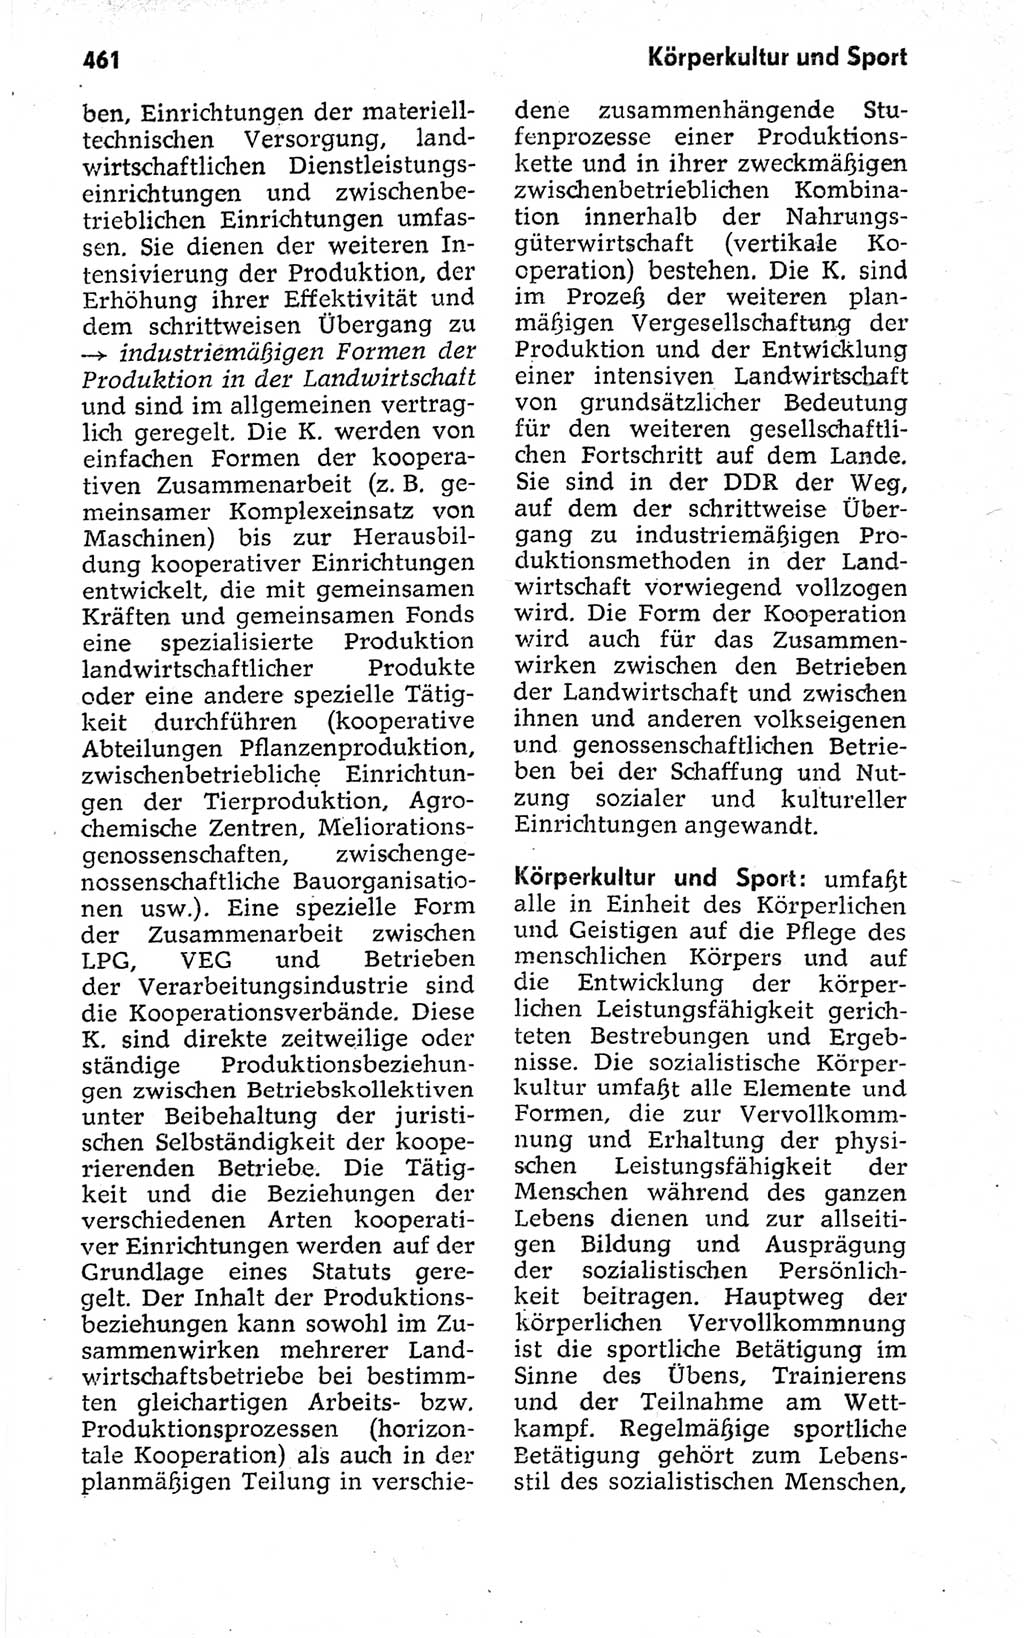 Kleines politisches Wörterbuch [Deutsche Demokratische Republik (DDR)] 1973, Seite 461 (Kl. pol. Wb. DDR 1973, S. 461)